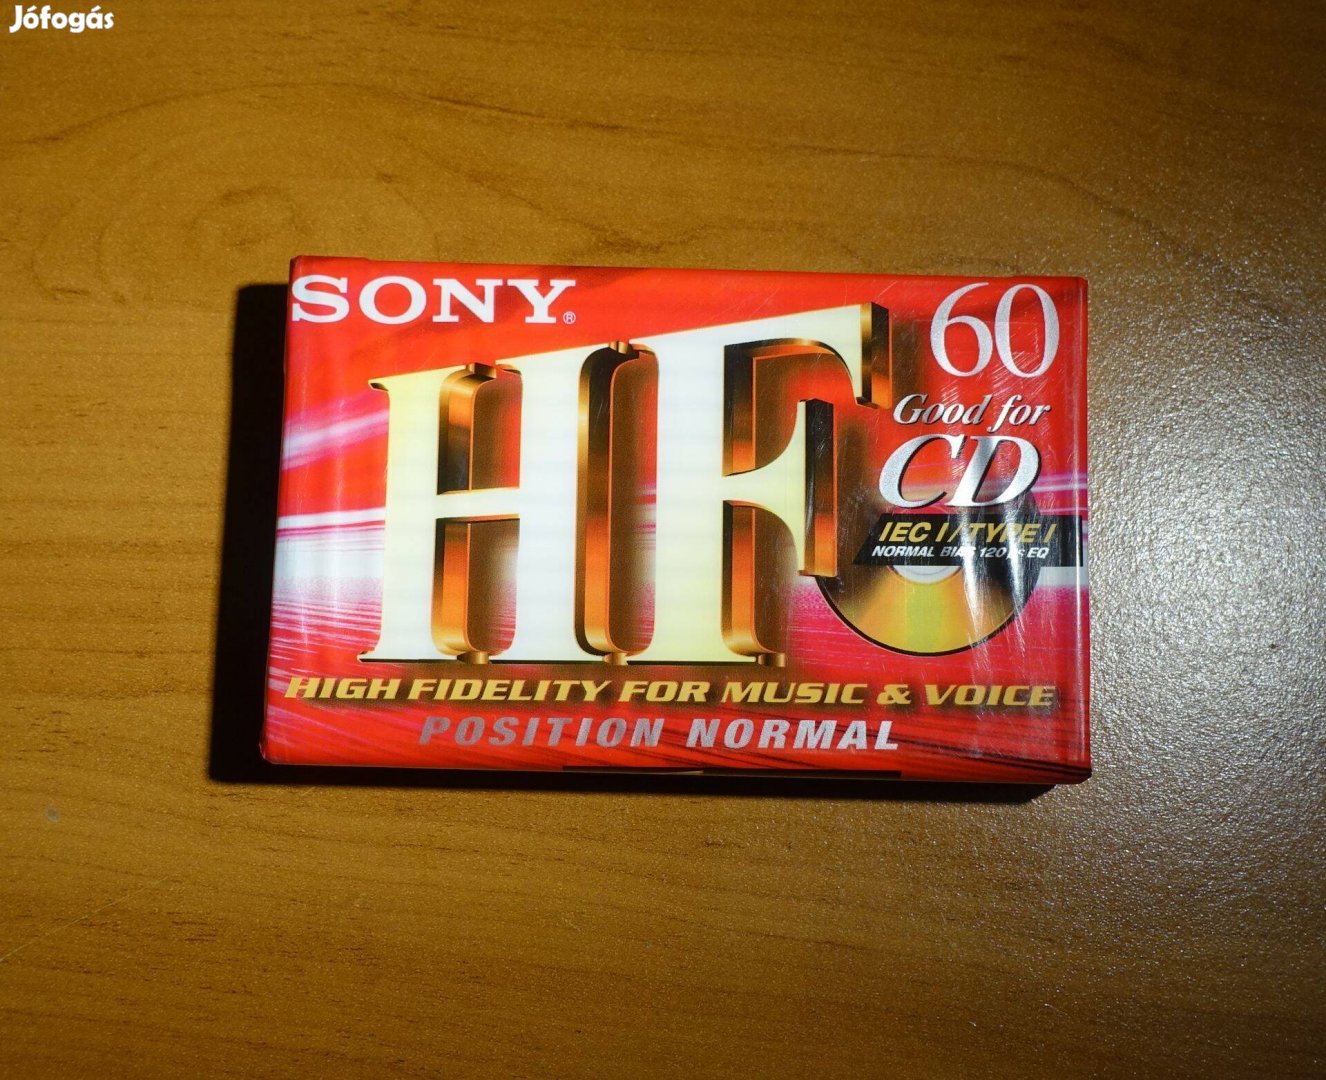 Sony HF 60 "Good for CD" bontatlan normál kazetta 1999 deck